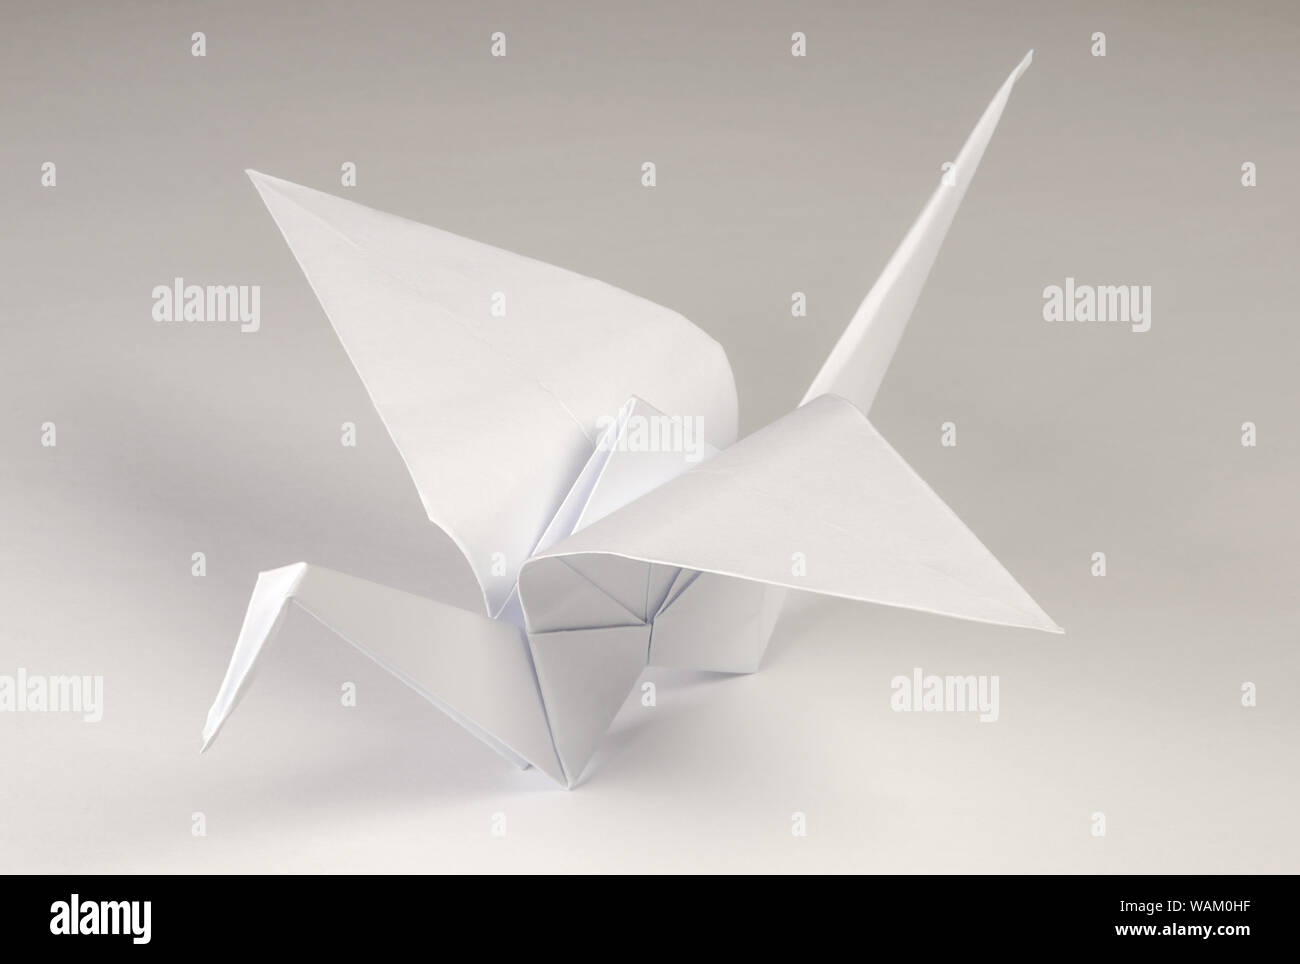 Hellgrau origami Crane auf grauem Hintergrund. Tsuru. Japanische Kunst des Papierfaltens. Flache quadratische Blatt Papier in fertige Skulptur übertragen. Stockfoto